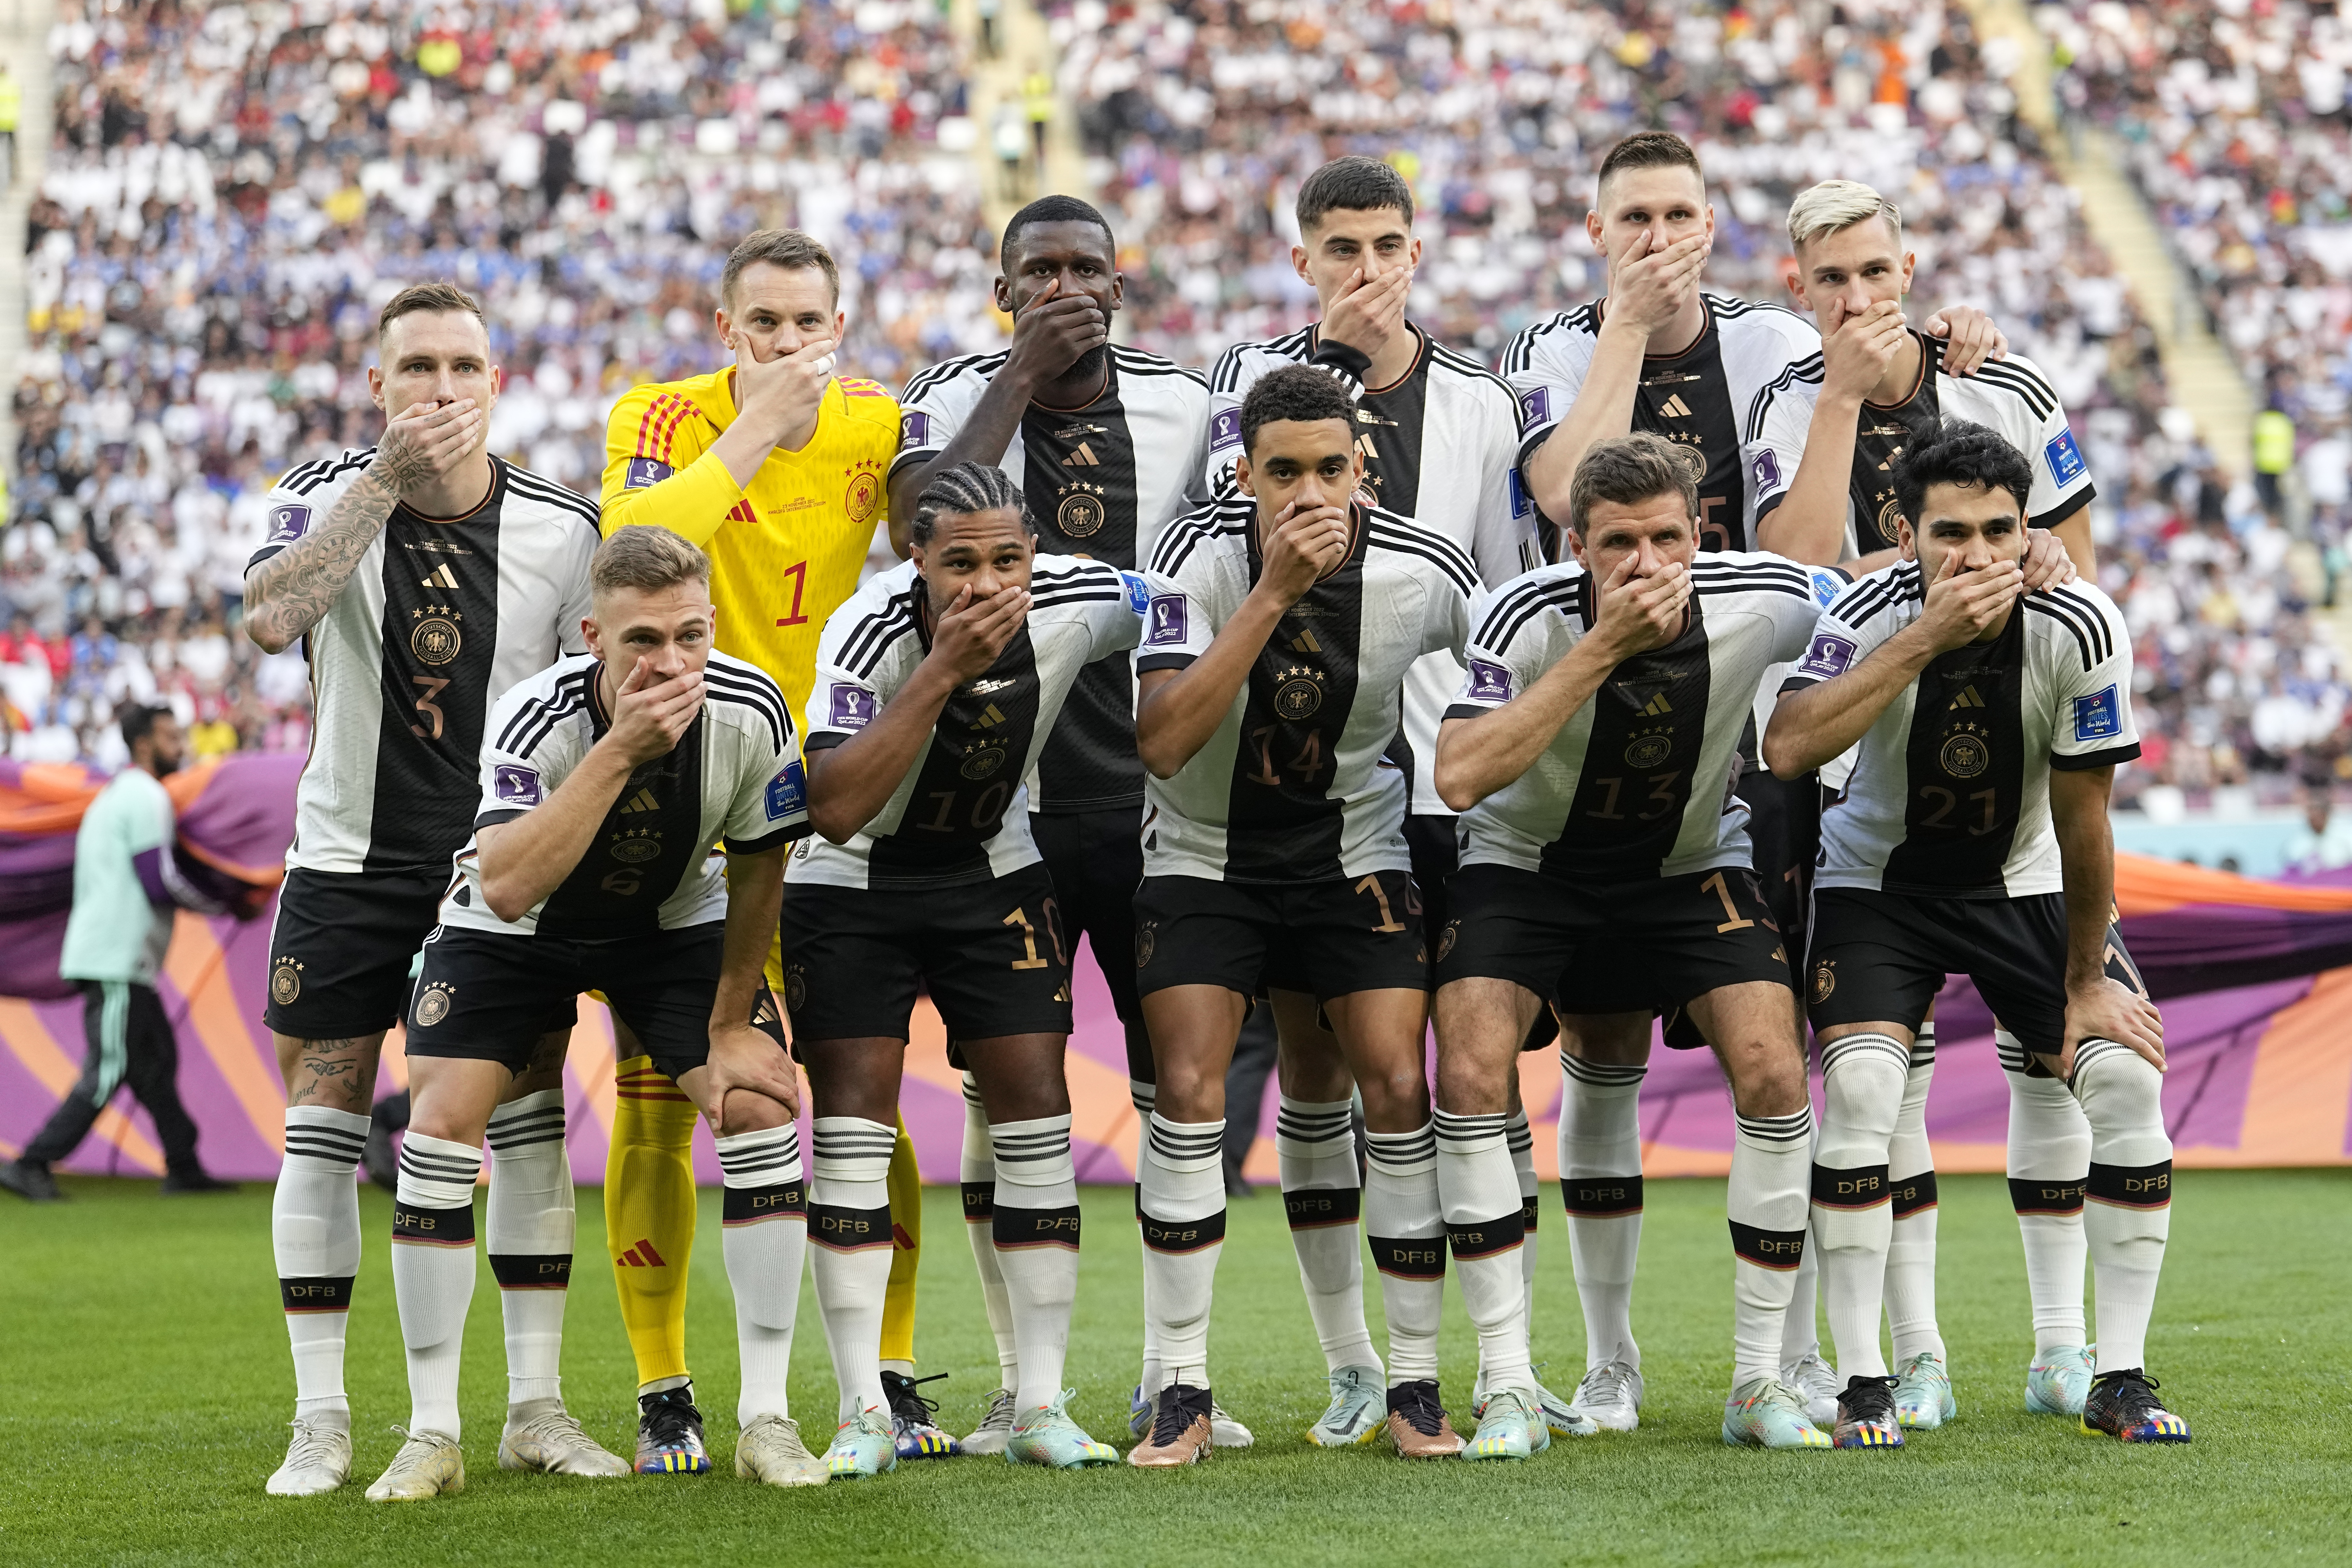 Les joueurs allemands accusés d'hypocrisie après une puissante manifestation anti-FIFA, les fans citent le traitement de Mesut Ozil